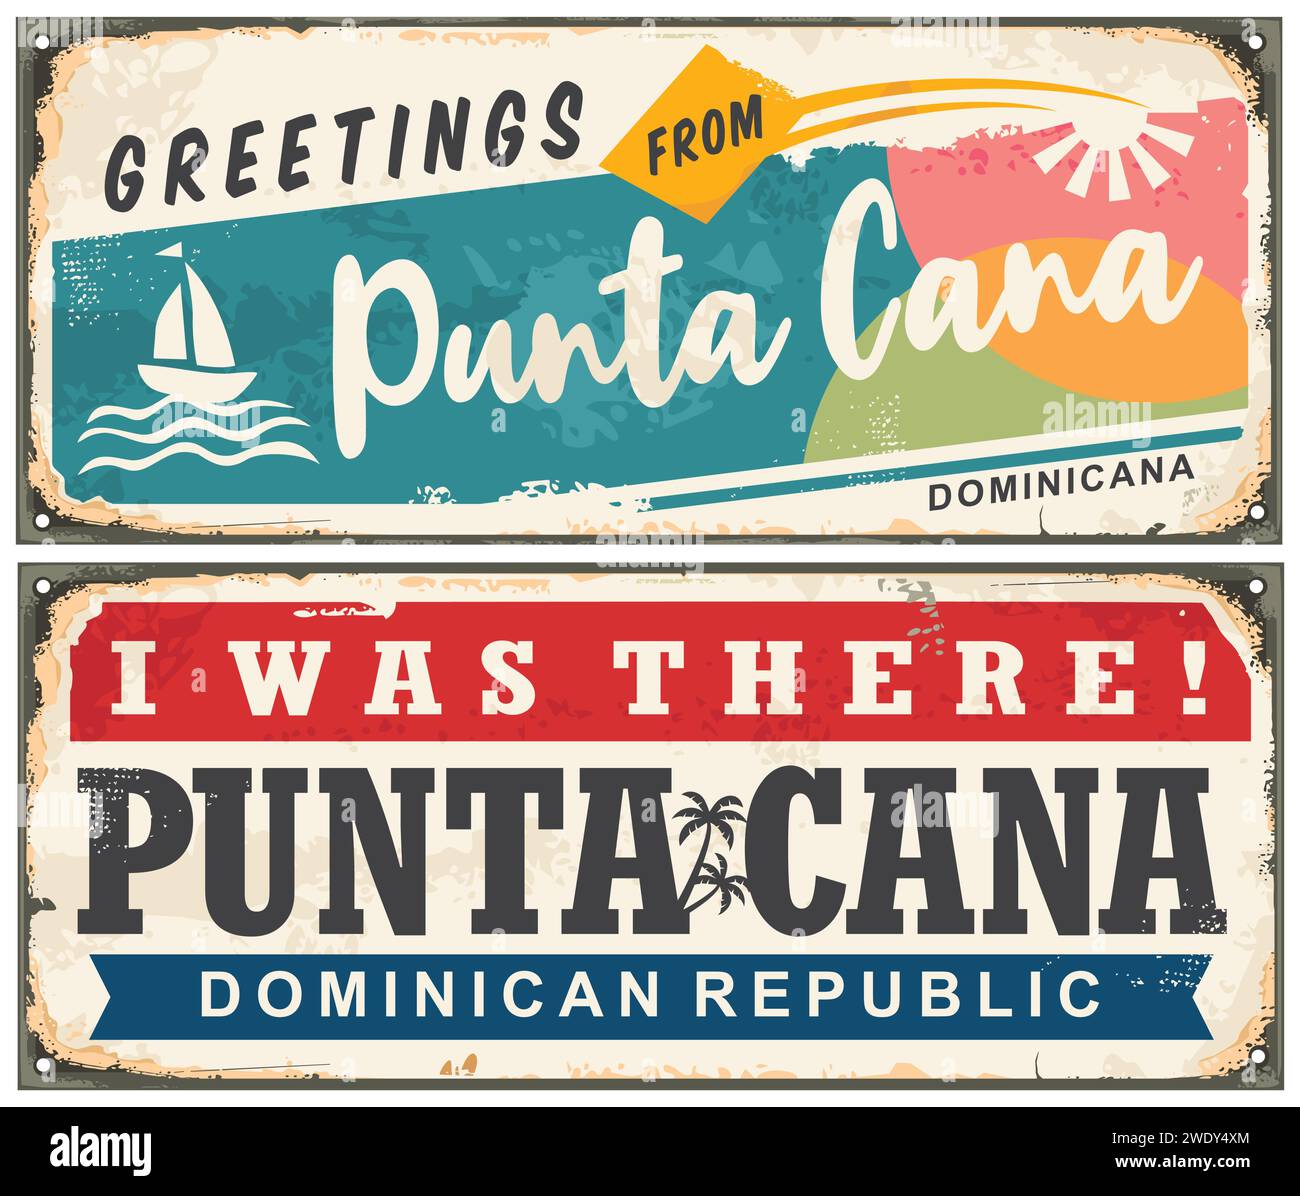 Punta Cana Retro-Grußkarte Souvenirschild aus der Dominikanischen Republik. Reisen und Urlaub zu tropischen Destinationen Vintage-Schilder Set. Dominicana vecto Stock Vektor